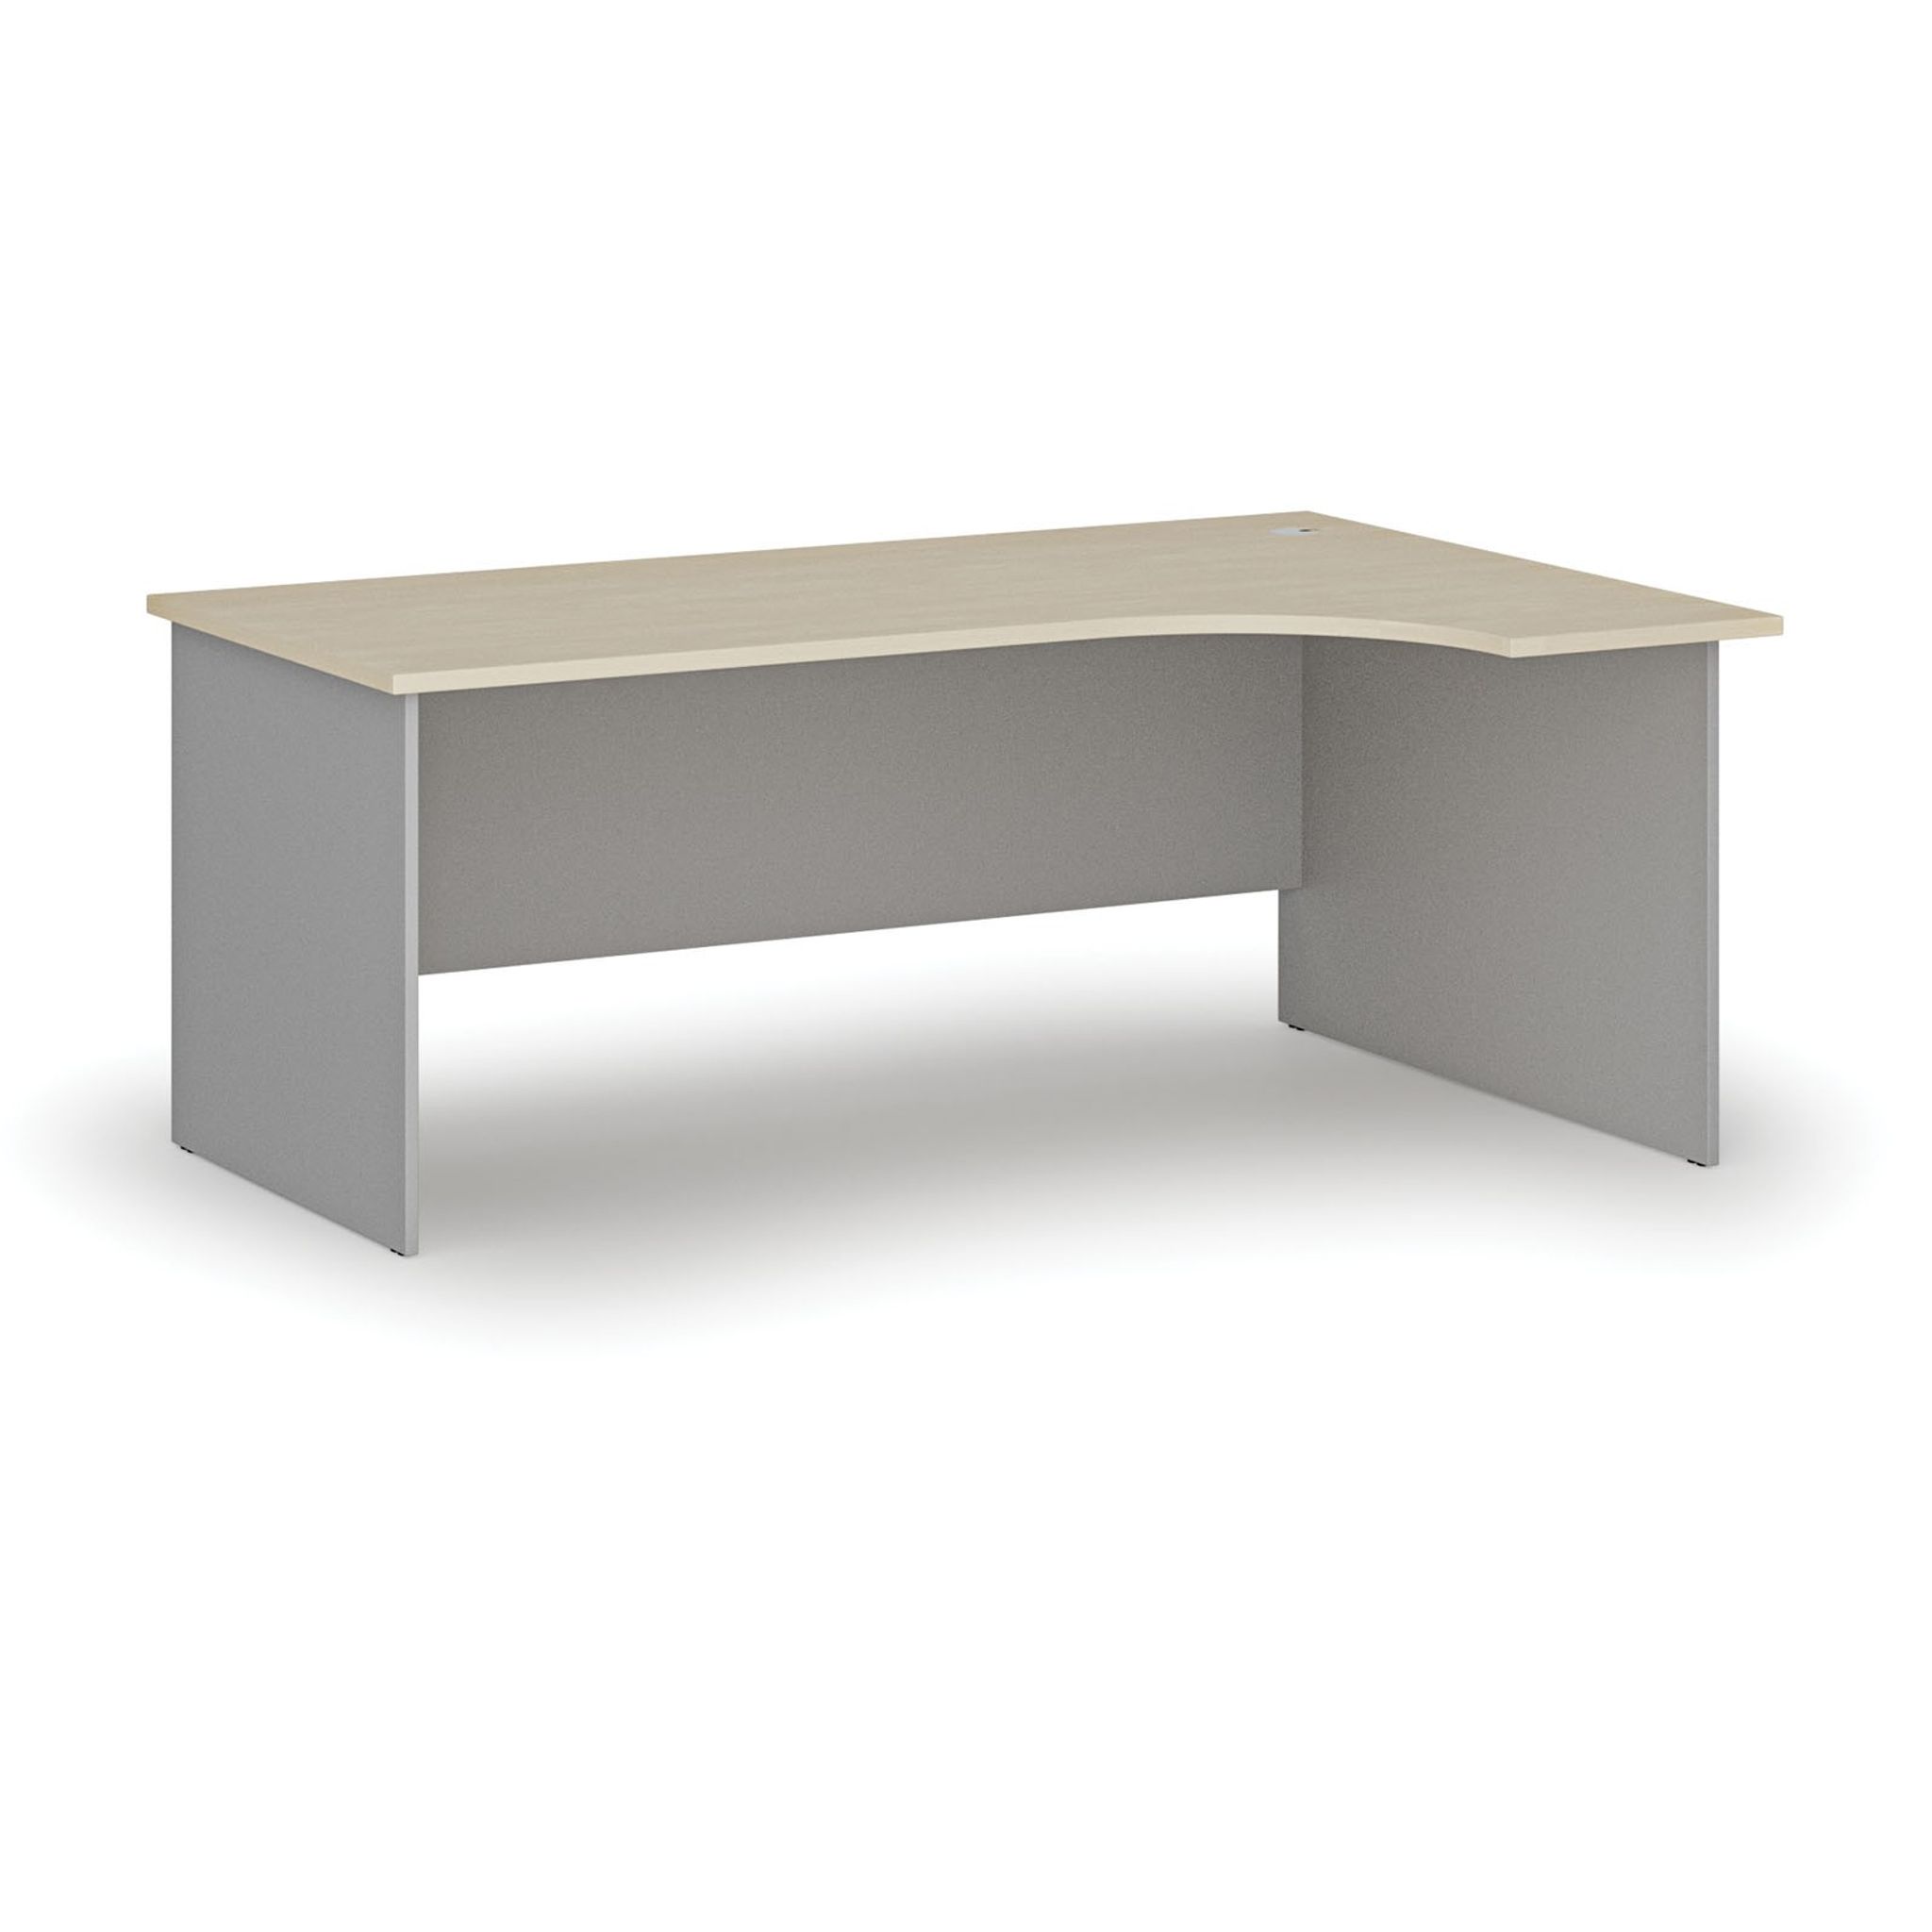 Kancelársky rohový pracovný stôl PRIMO GRAY, 1800 x 1200 mm, pravý